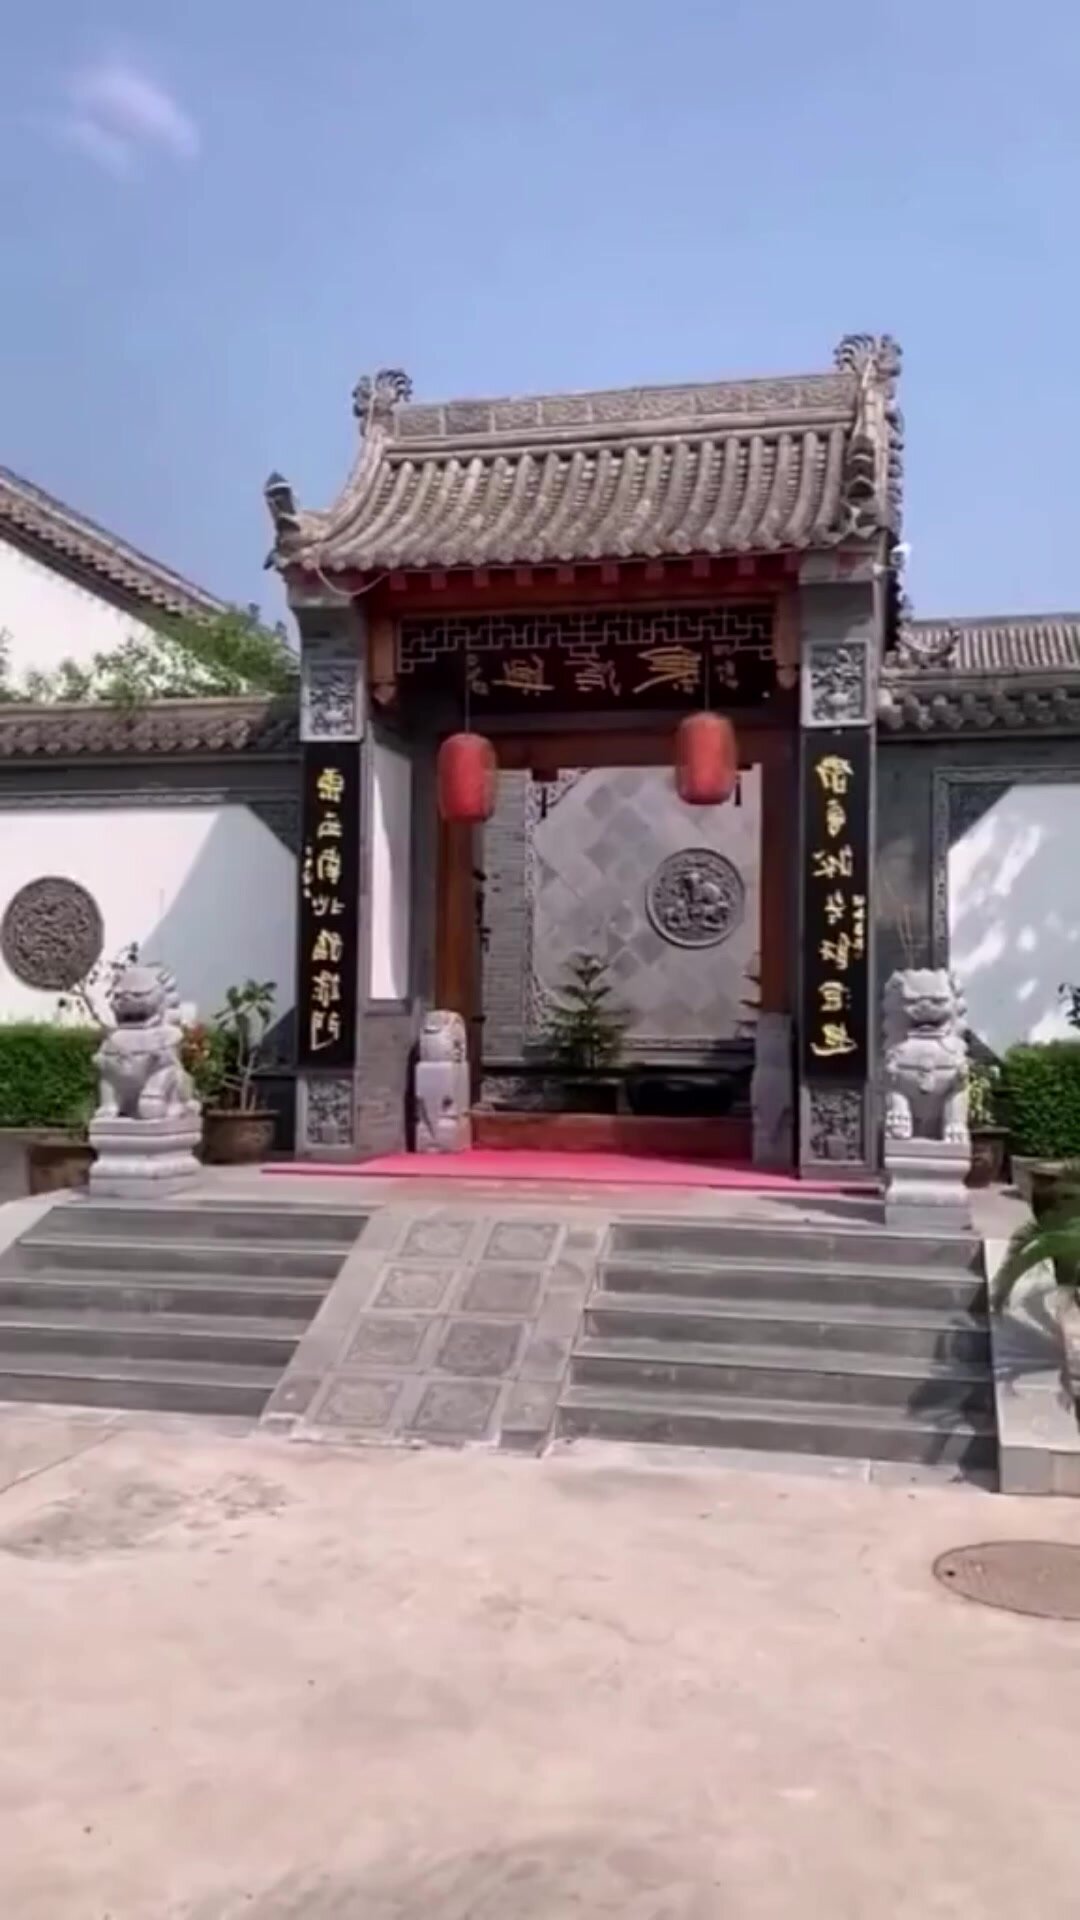 中式庭院门楼围墙设计,彰显主人品味